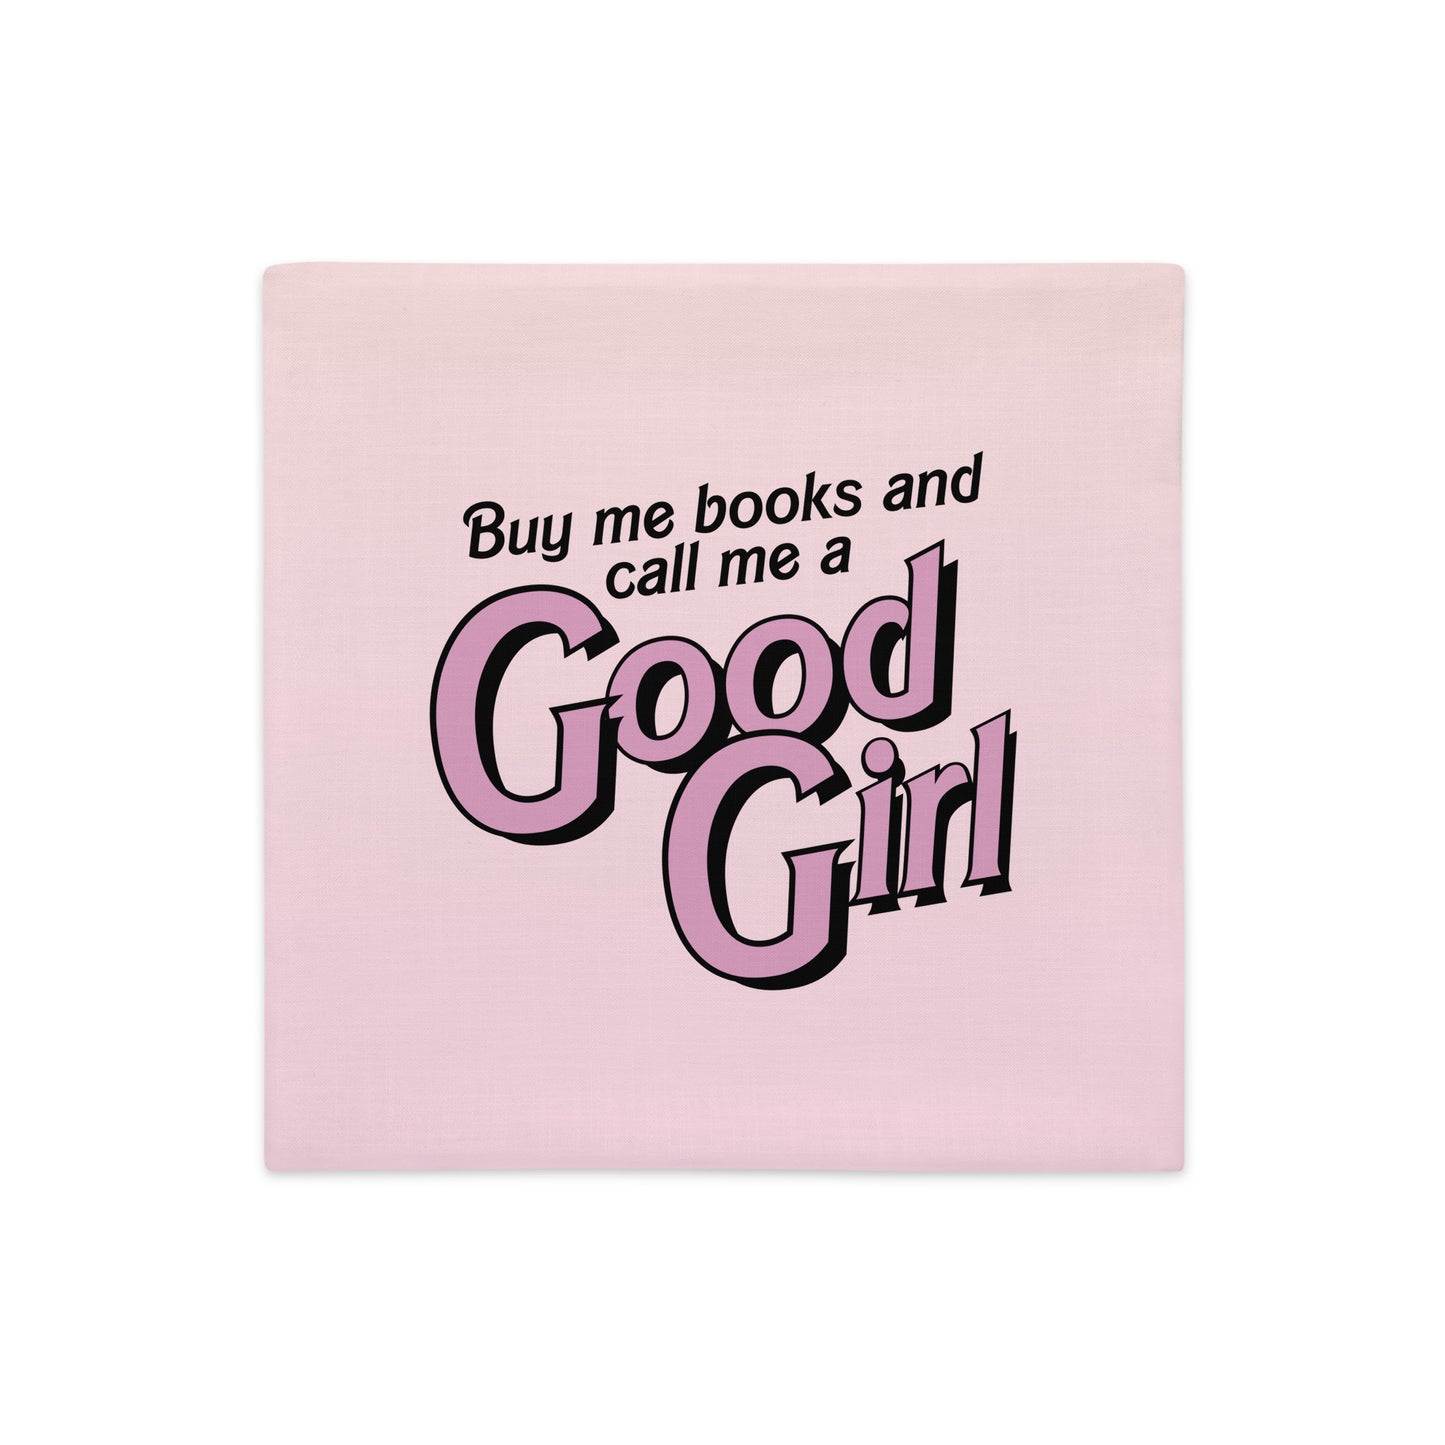 Buy me books and call me a Good Girl